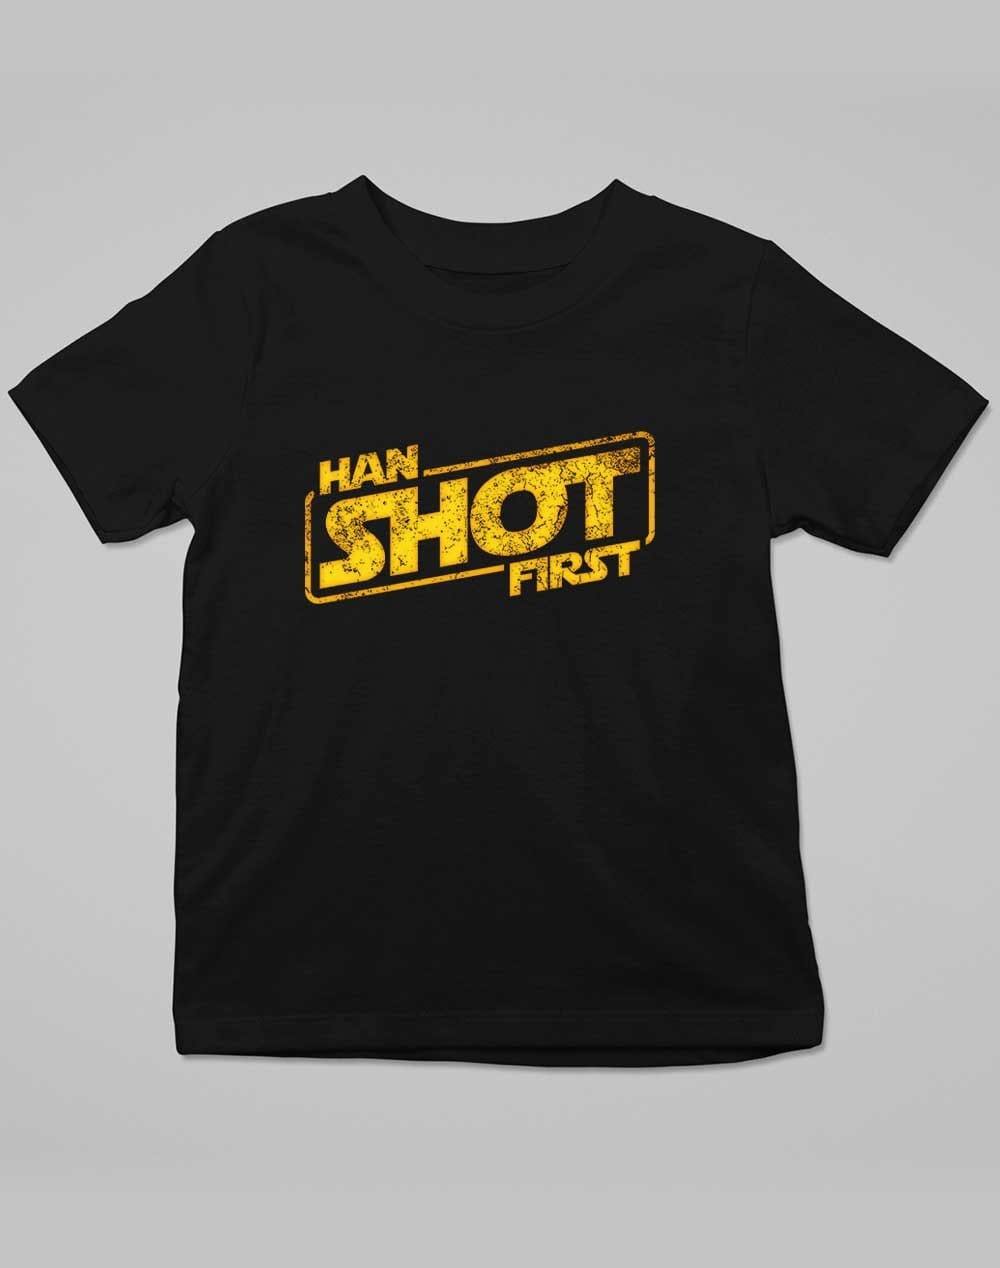 Han Shot First - Kids T-Shirt 3-4 years / Deep Black  - Off World Tees